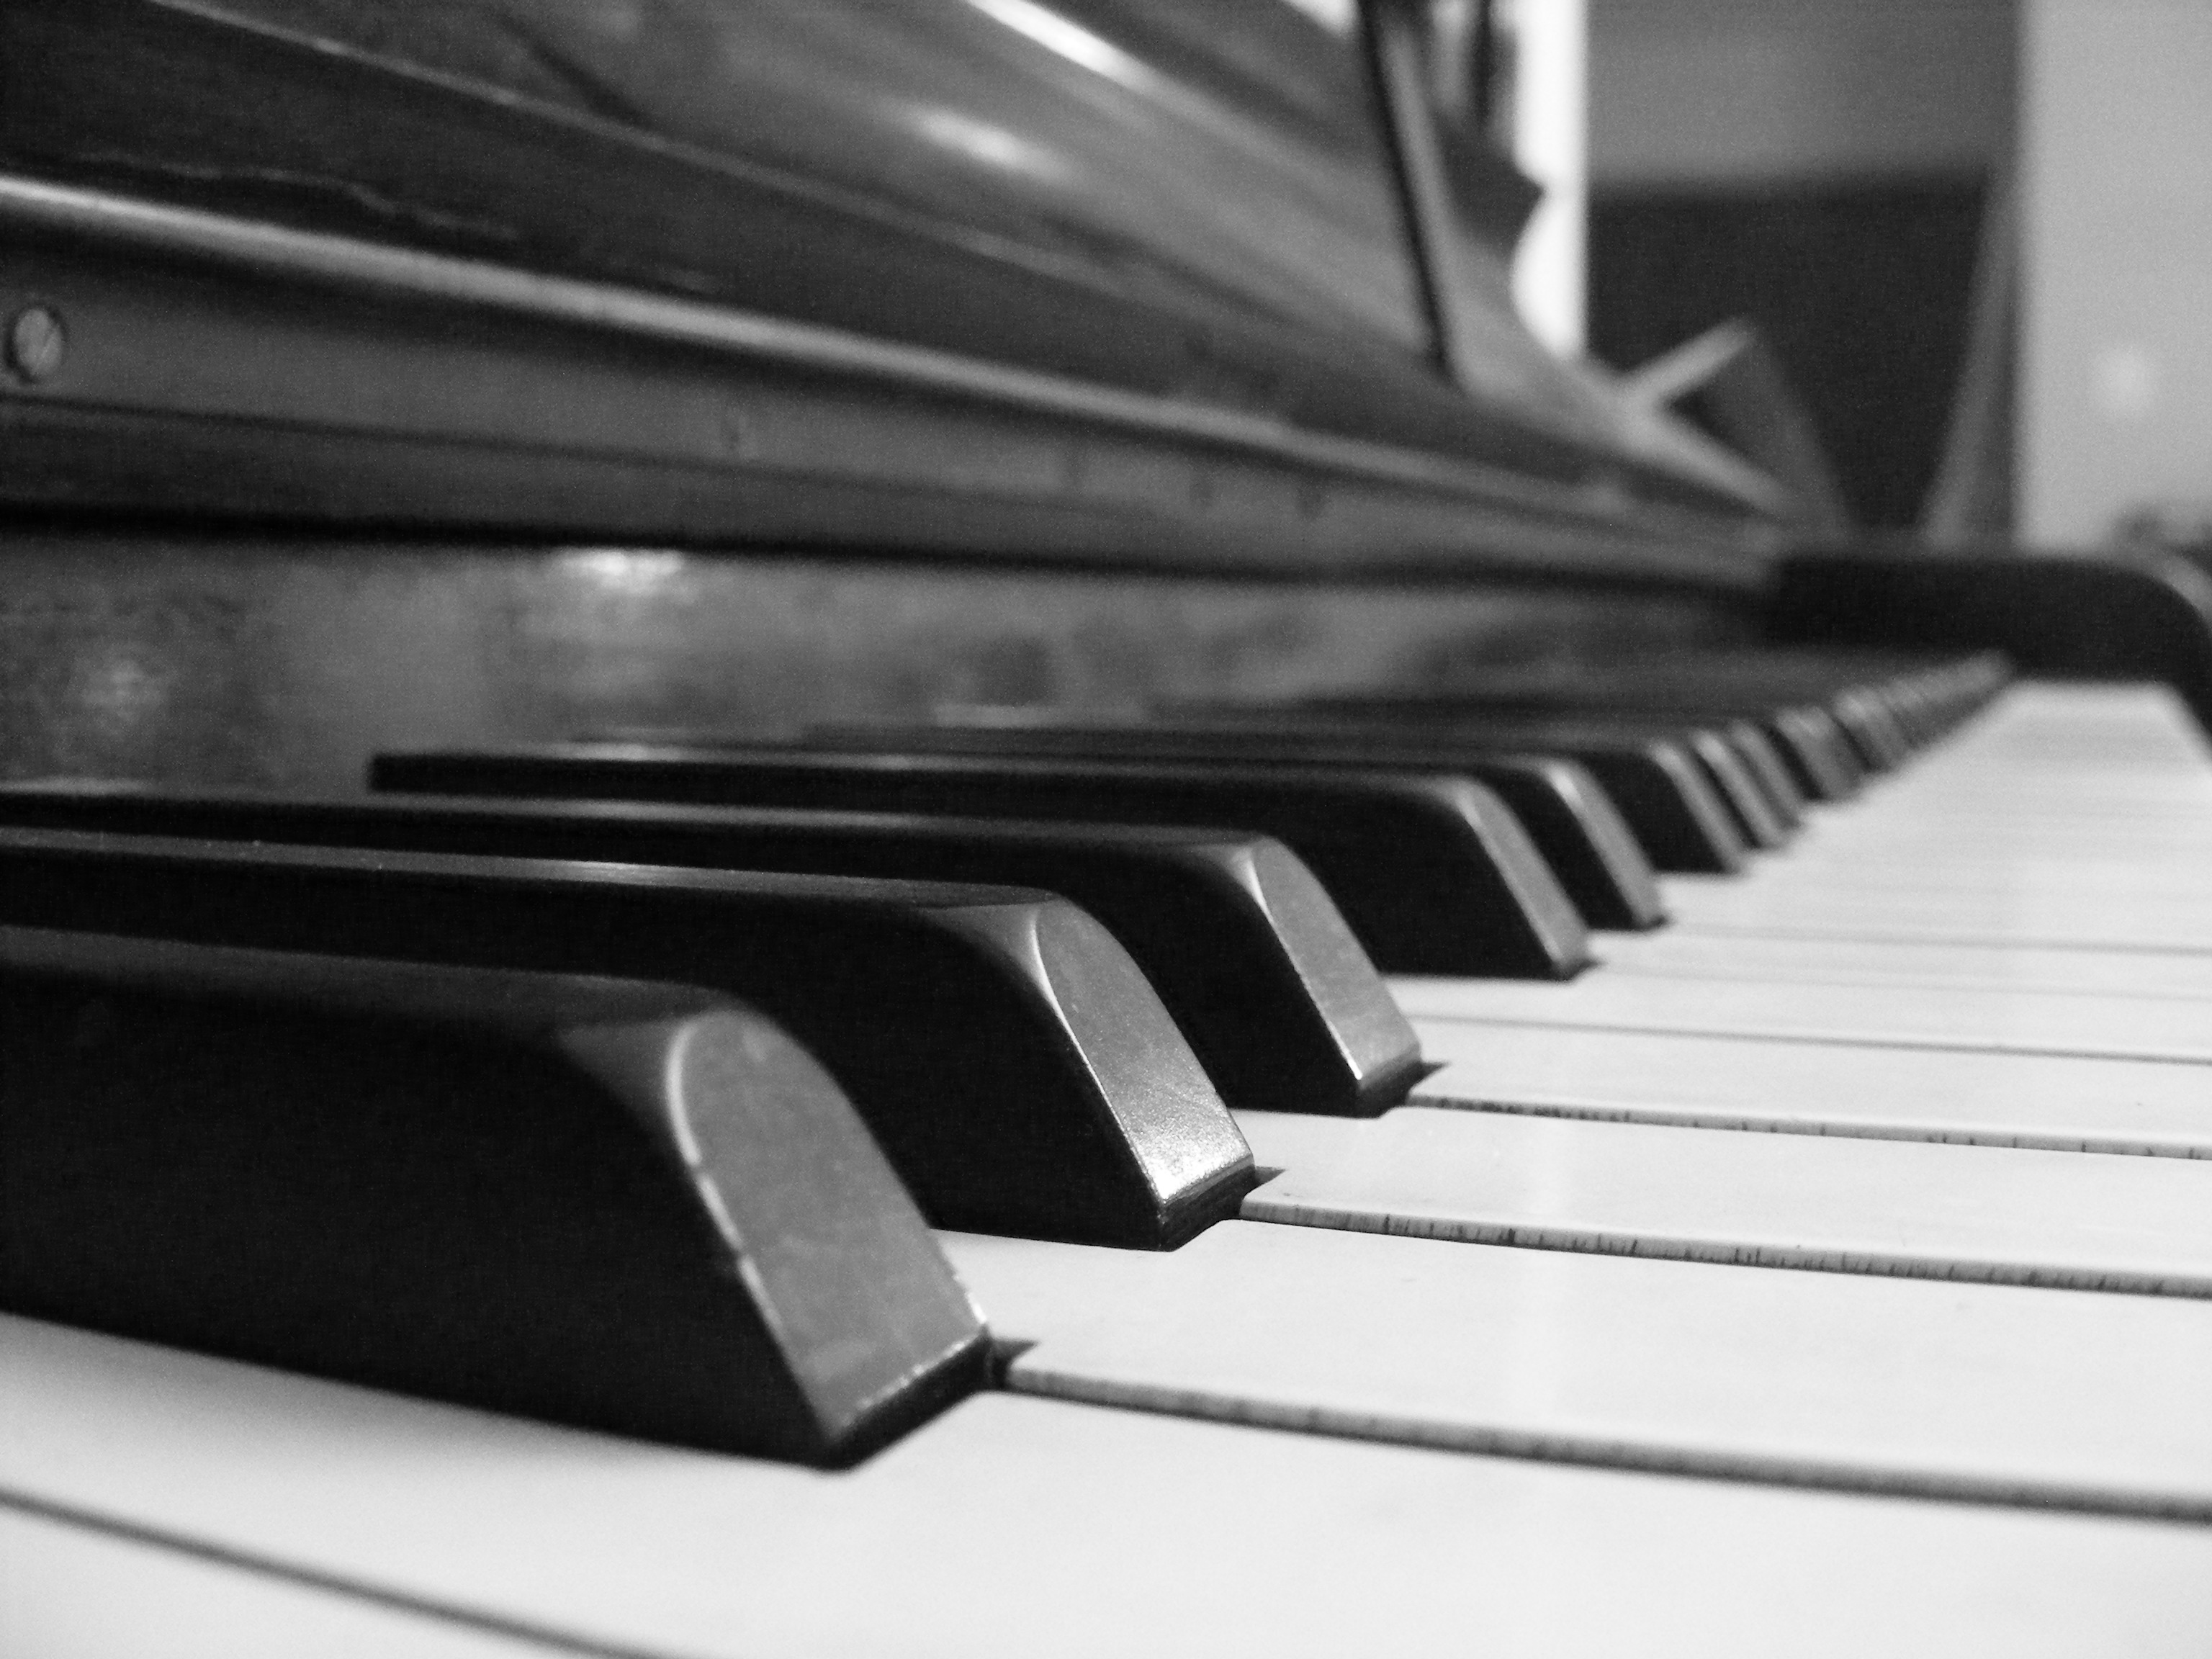 Piano Keyboard by Lusky on DeviantArt